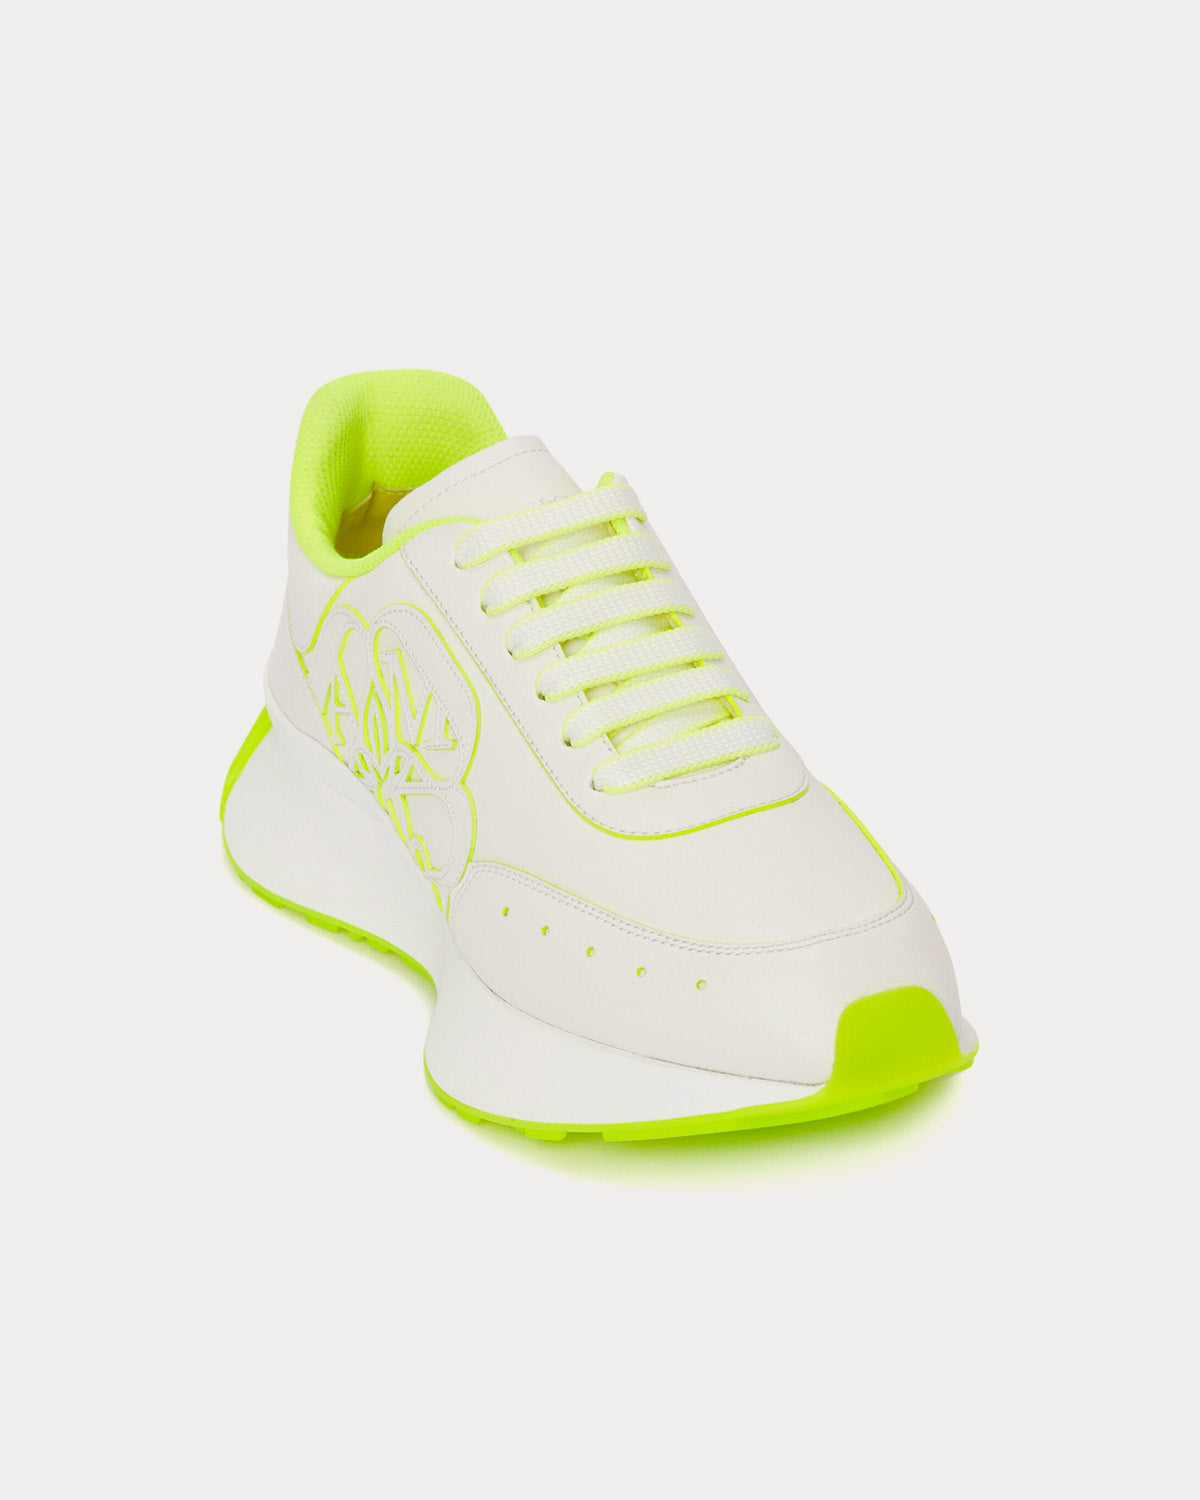 Alexander McQueen - Sprint Runner White / Acid Yellow Low Top Sneakers